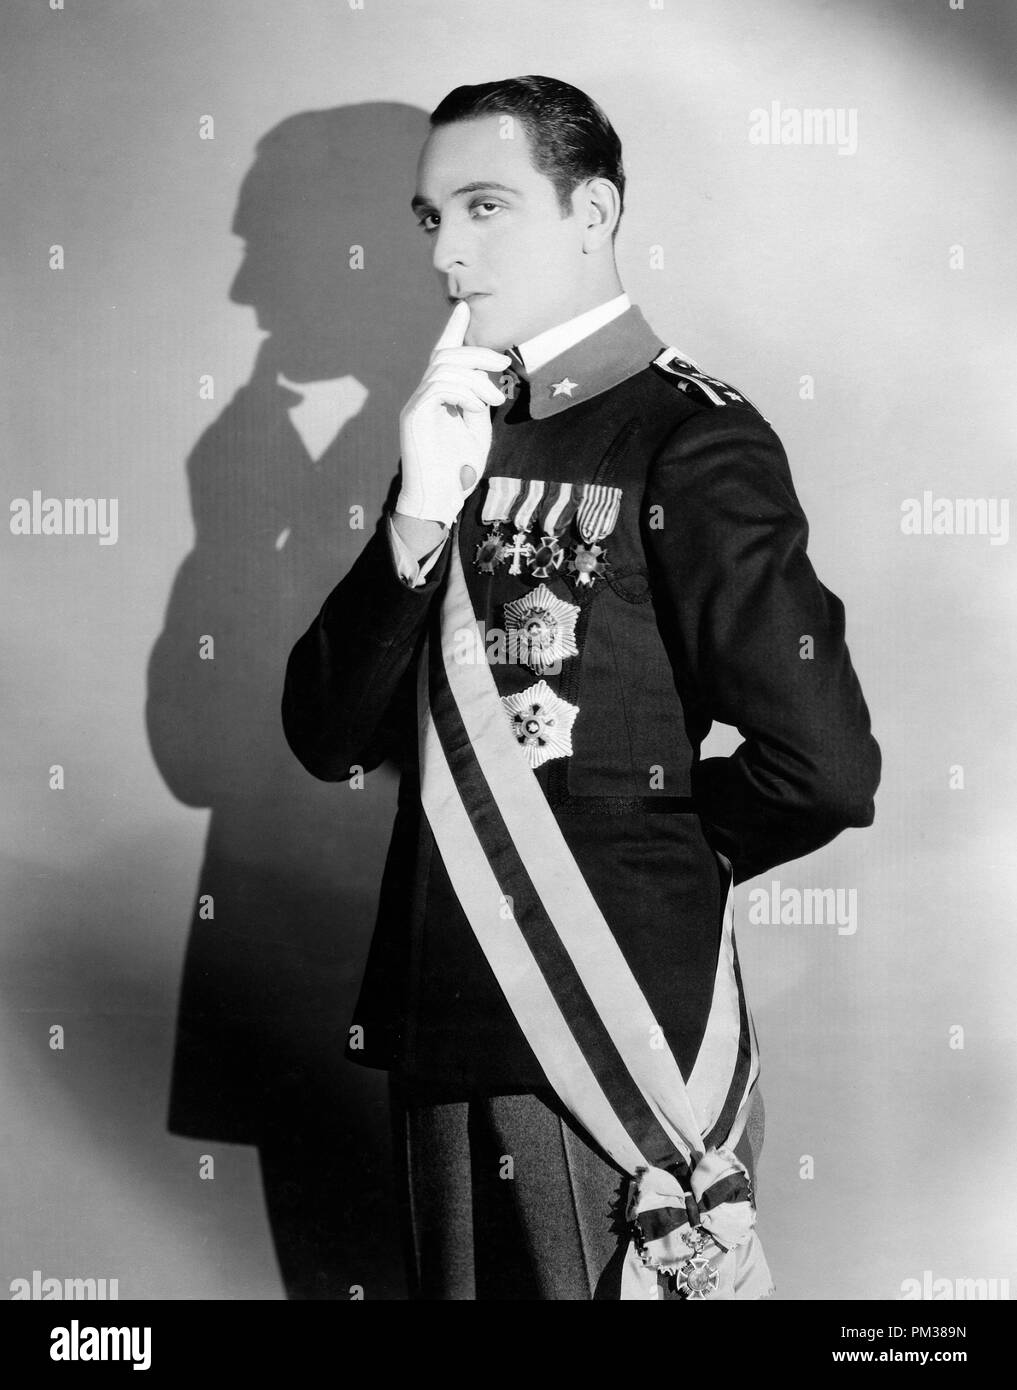 Encore du cinéma muet. Portrait d'un homme portant un uniforme militaire de haut rang avec de nombreuses médailles épinglée sur sa veste, 1925. Référence de fichier #  1183 006THA Banque D'Images